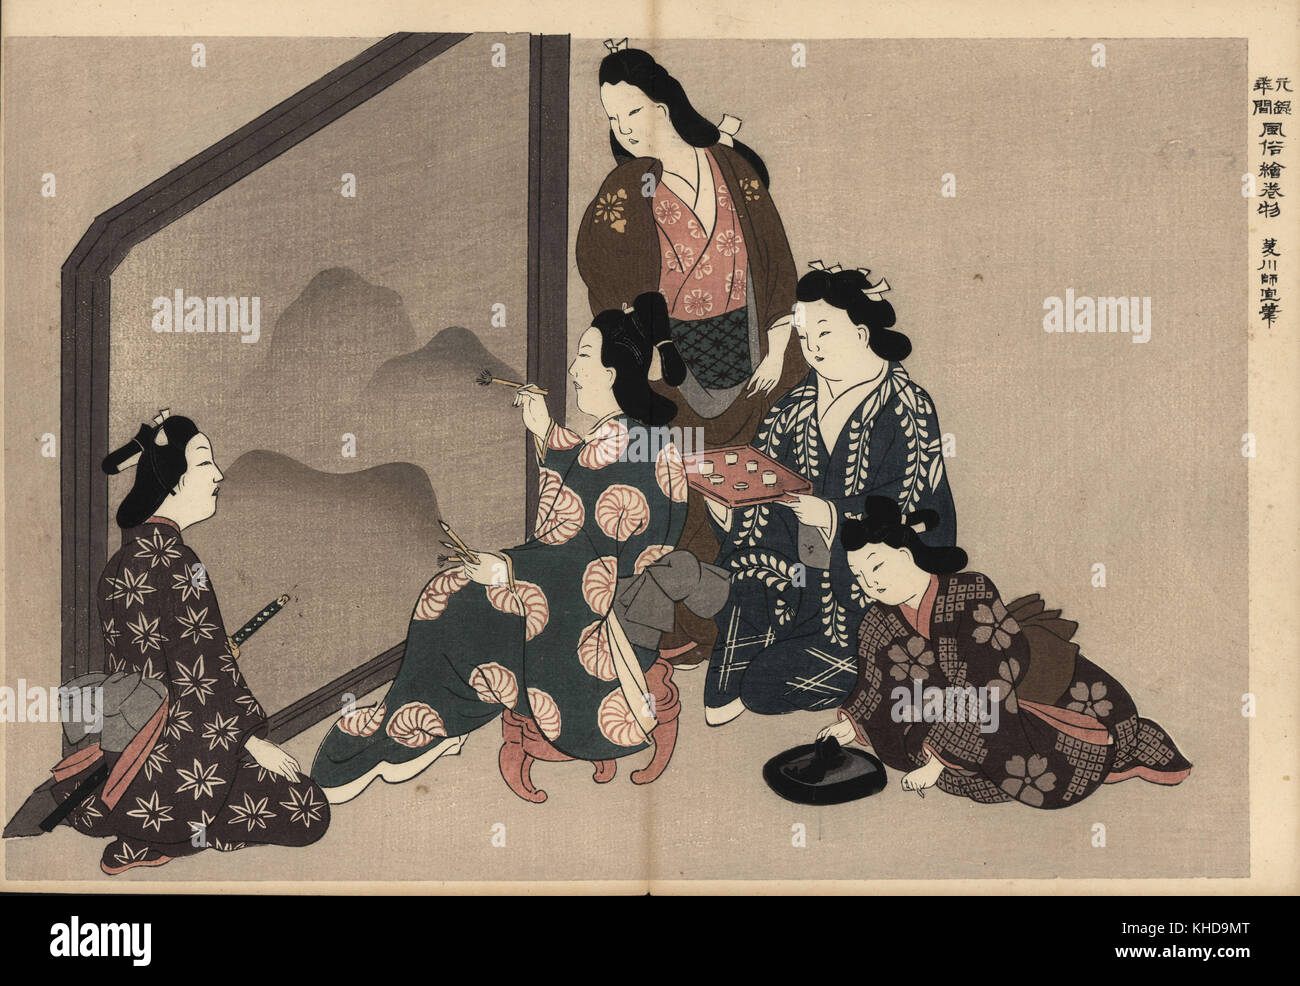 Kurtisanen Malerei eine große Sumi-e (Tinte - Waschen Malerei). Ein Samurai Kunden Uhren, und ein kamuro Maid bereitet die Tinte. Holzschnitt von Hishikawa Moronobu (1618-1694) von Fuzoku Emakimono, Bild Scrollen von Wasser Handel, Tokio, Reprint circa 1880. Stockfoto